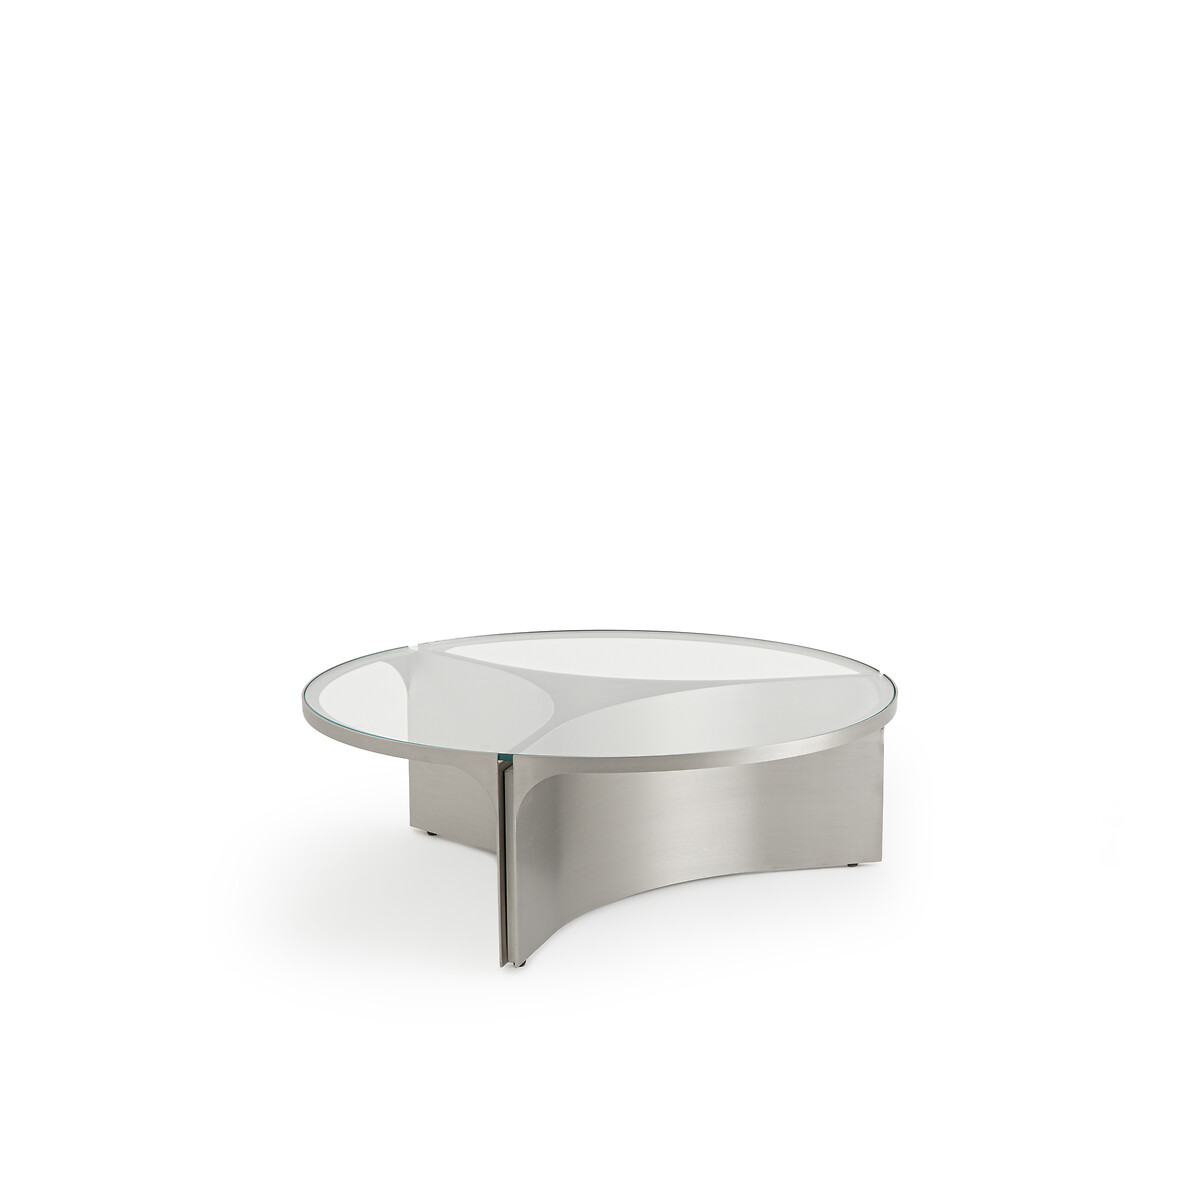 Стол журнальный из стекла и металла Gira маленькая модель единый размер серый стол laredoute журнальный прямоугольный из металла strobile единый размер серый